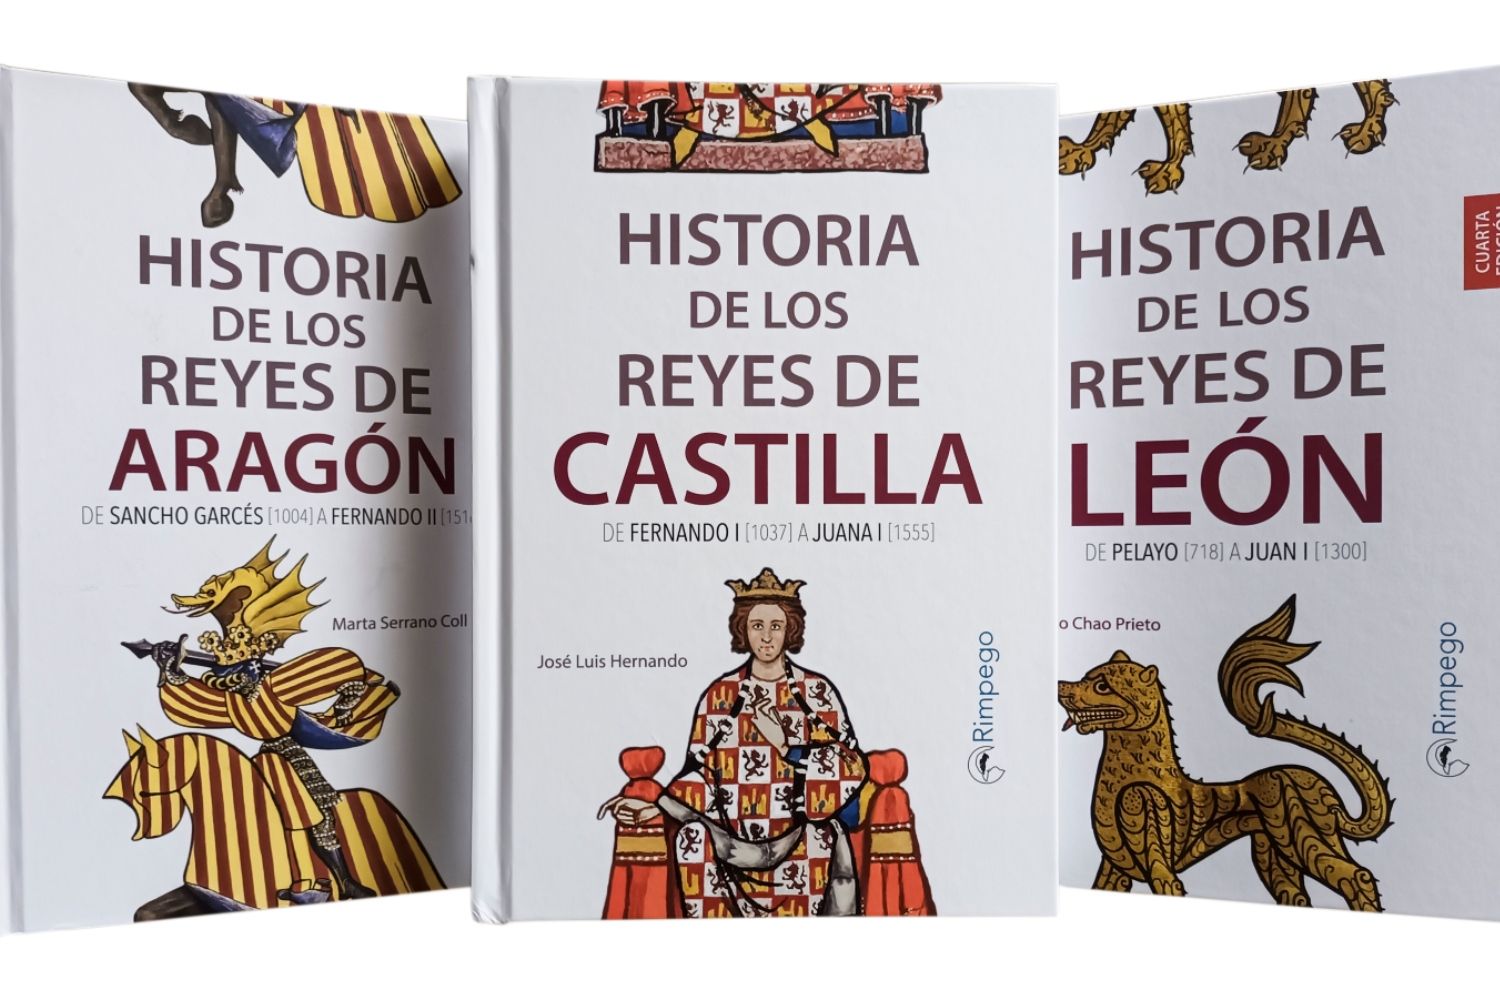  La editorial Rimpego publica el libro Historia de los Reyes de Castilla